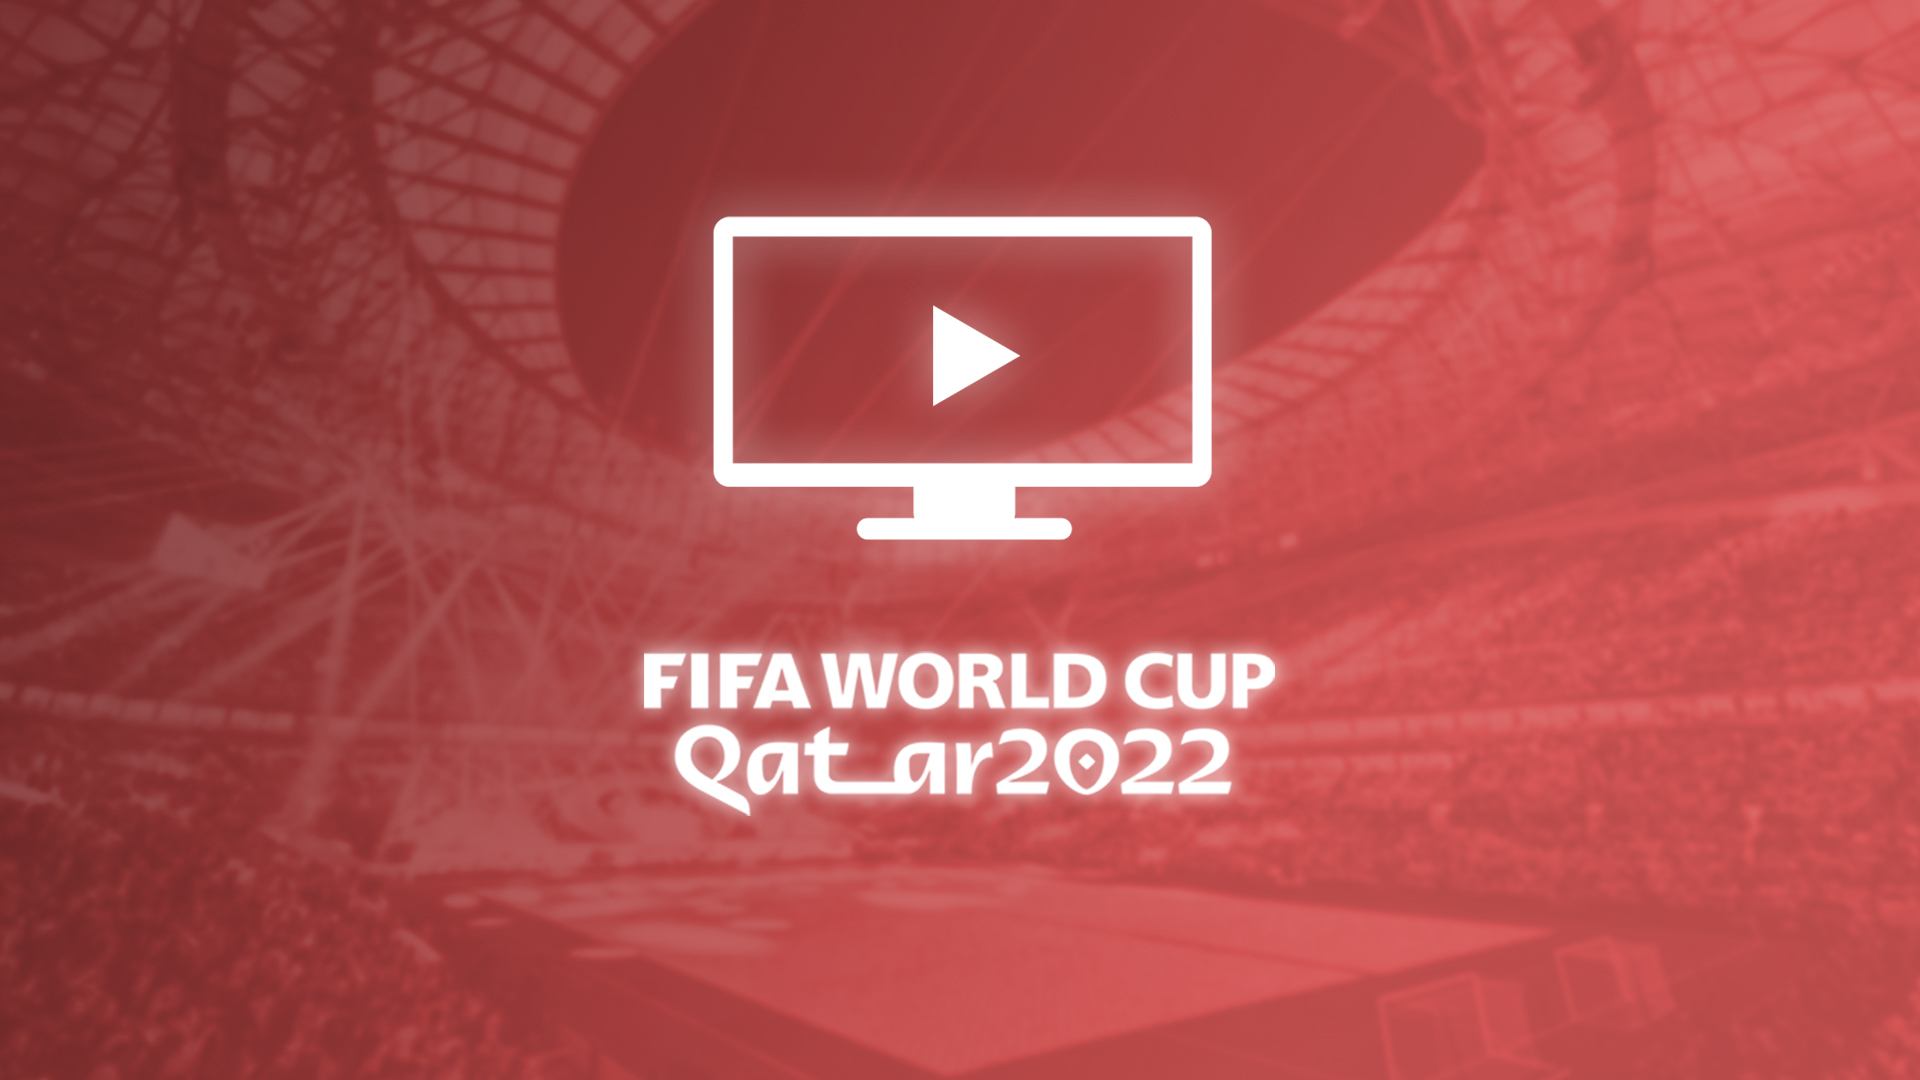 Catar 2022, como assistir a Copa do Mundo pela TV (ou ao vivo): datas, horários e canais